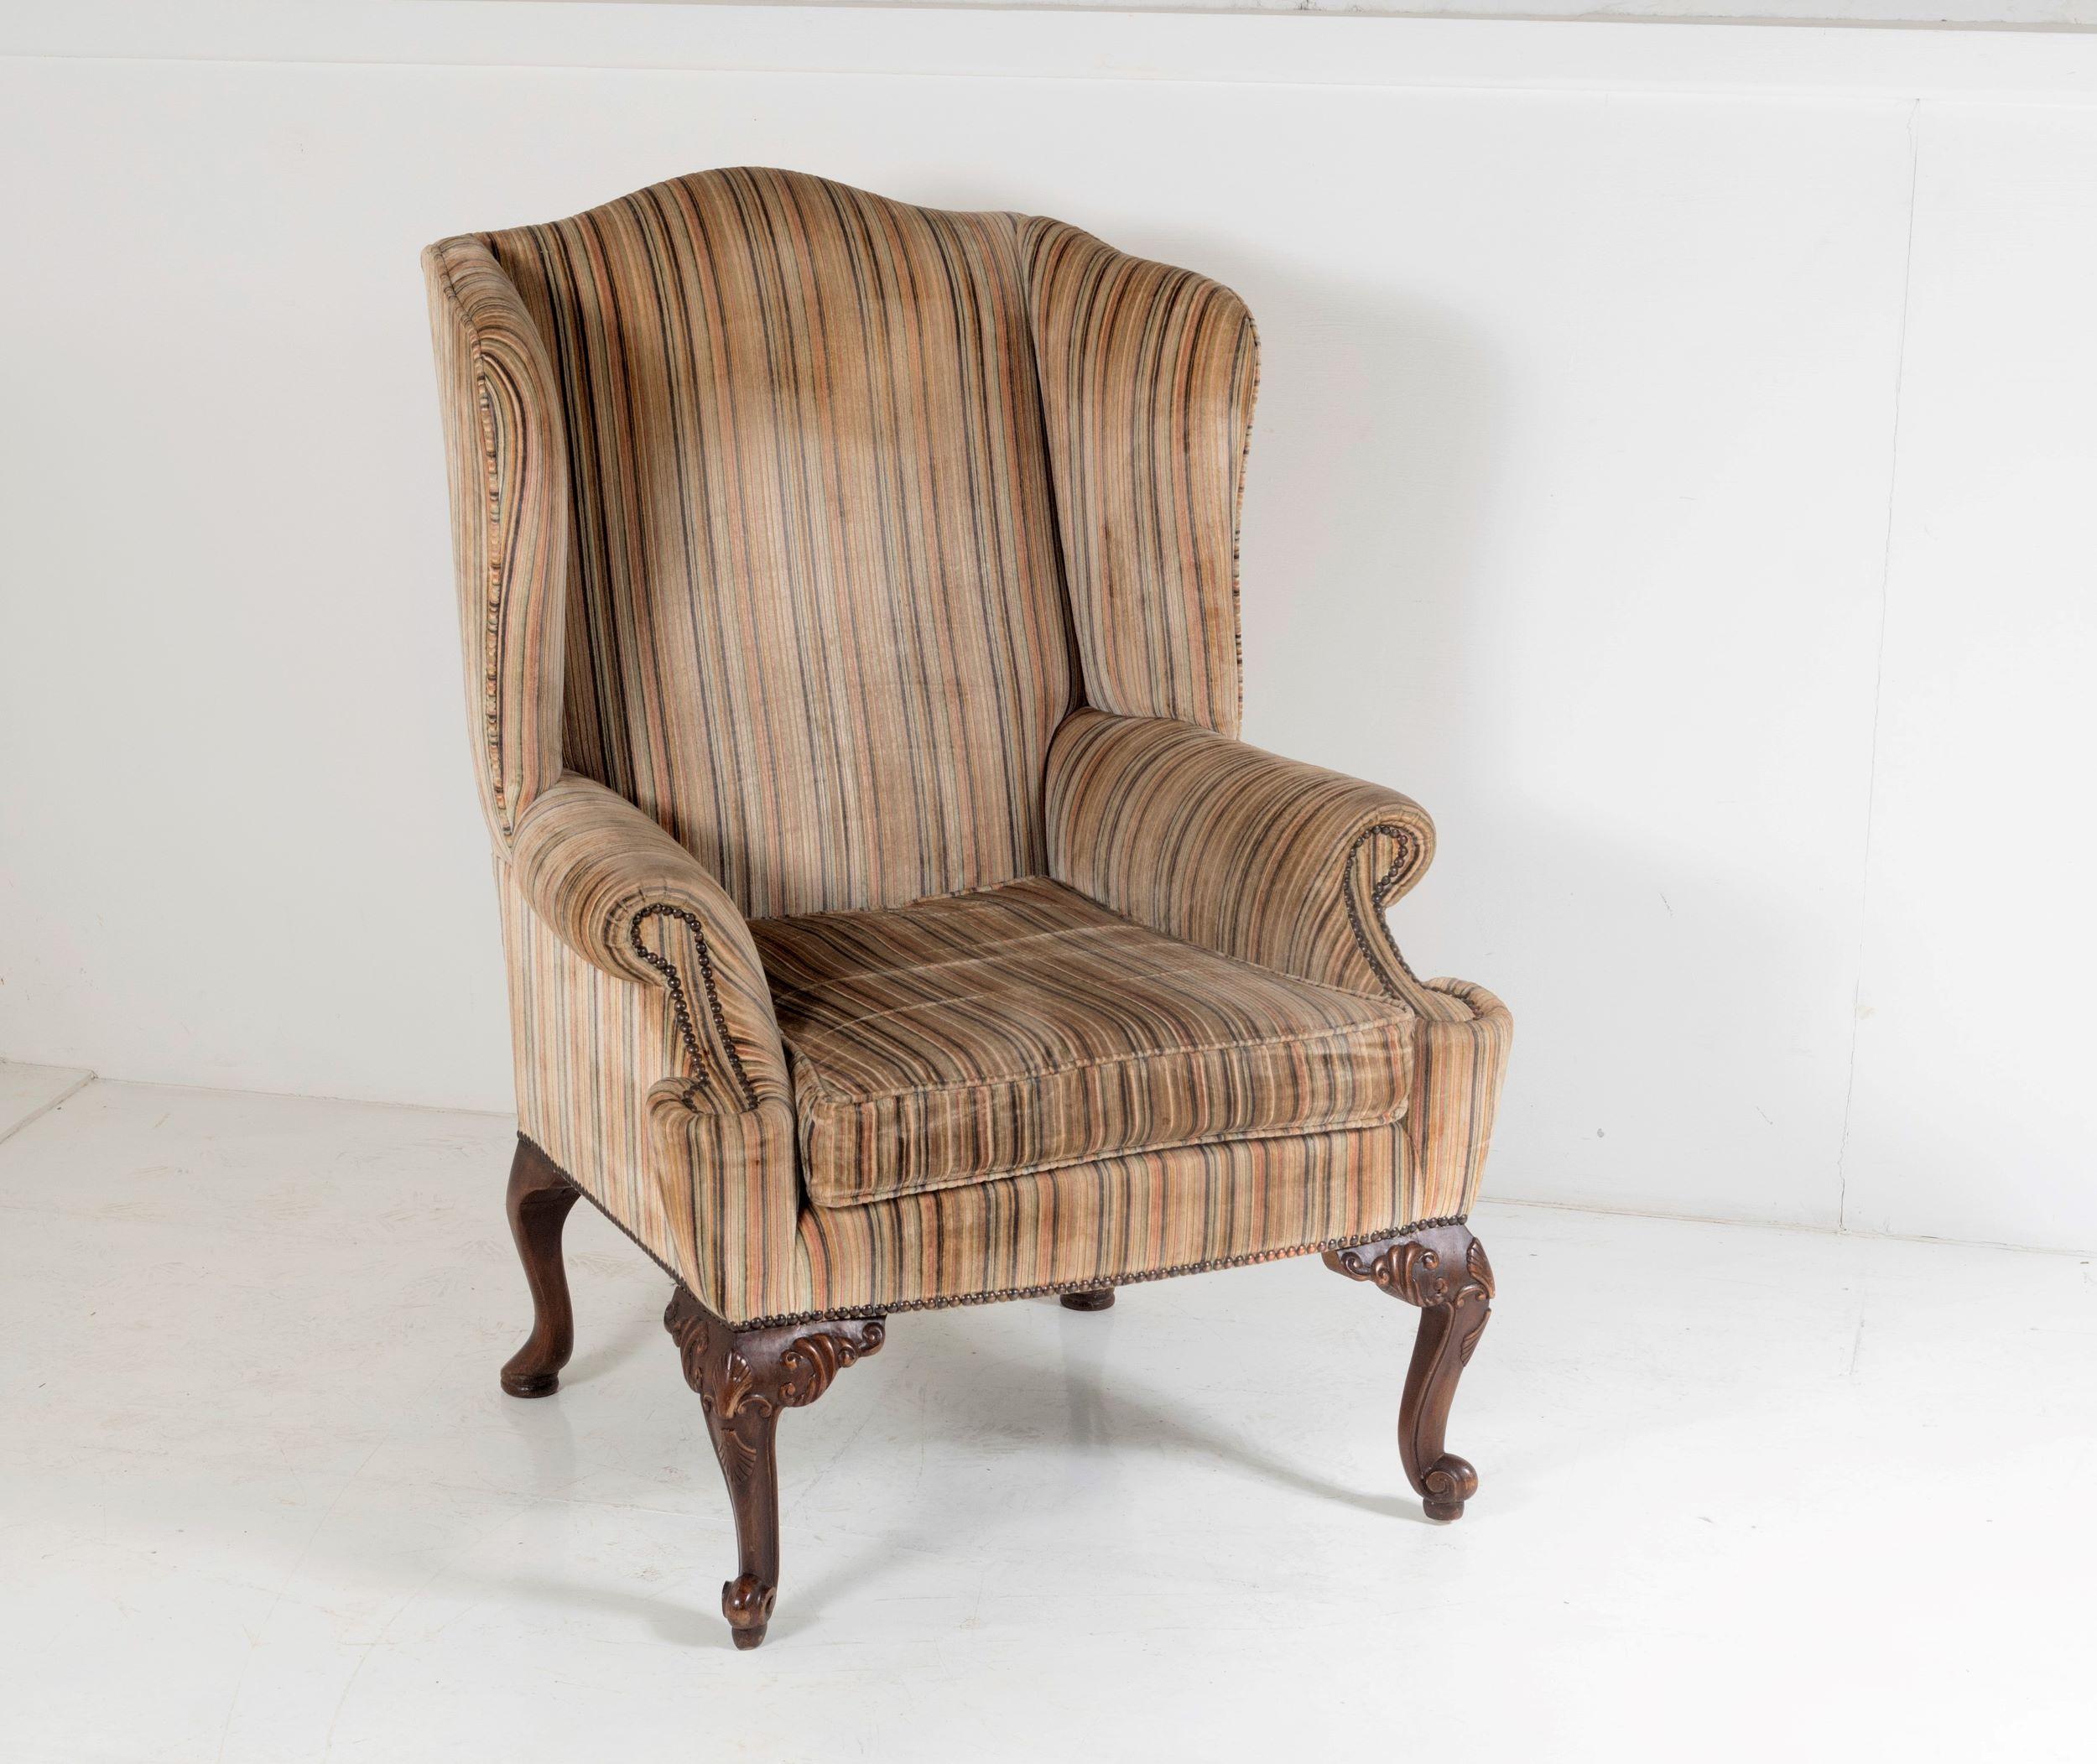 Eine gute Qualität George III Stil Flügel zurück Sessel mit original gestreiften Polsterung auf kurzen Cabriole Beine und pad Füße.
Die Polsterung ist in gutem Zustand, etwas verblasst, aber insgesamt in sehr gutem Zustand mit schönem Flor, eine